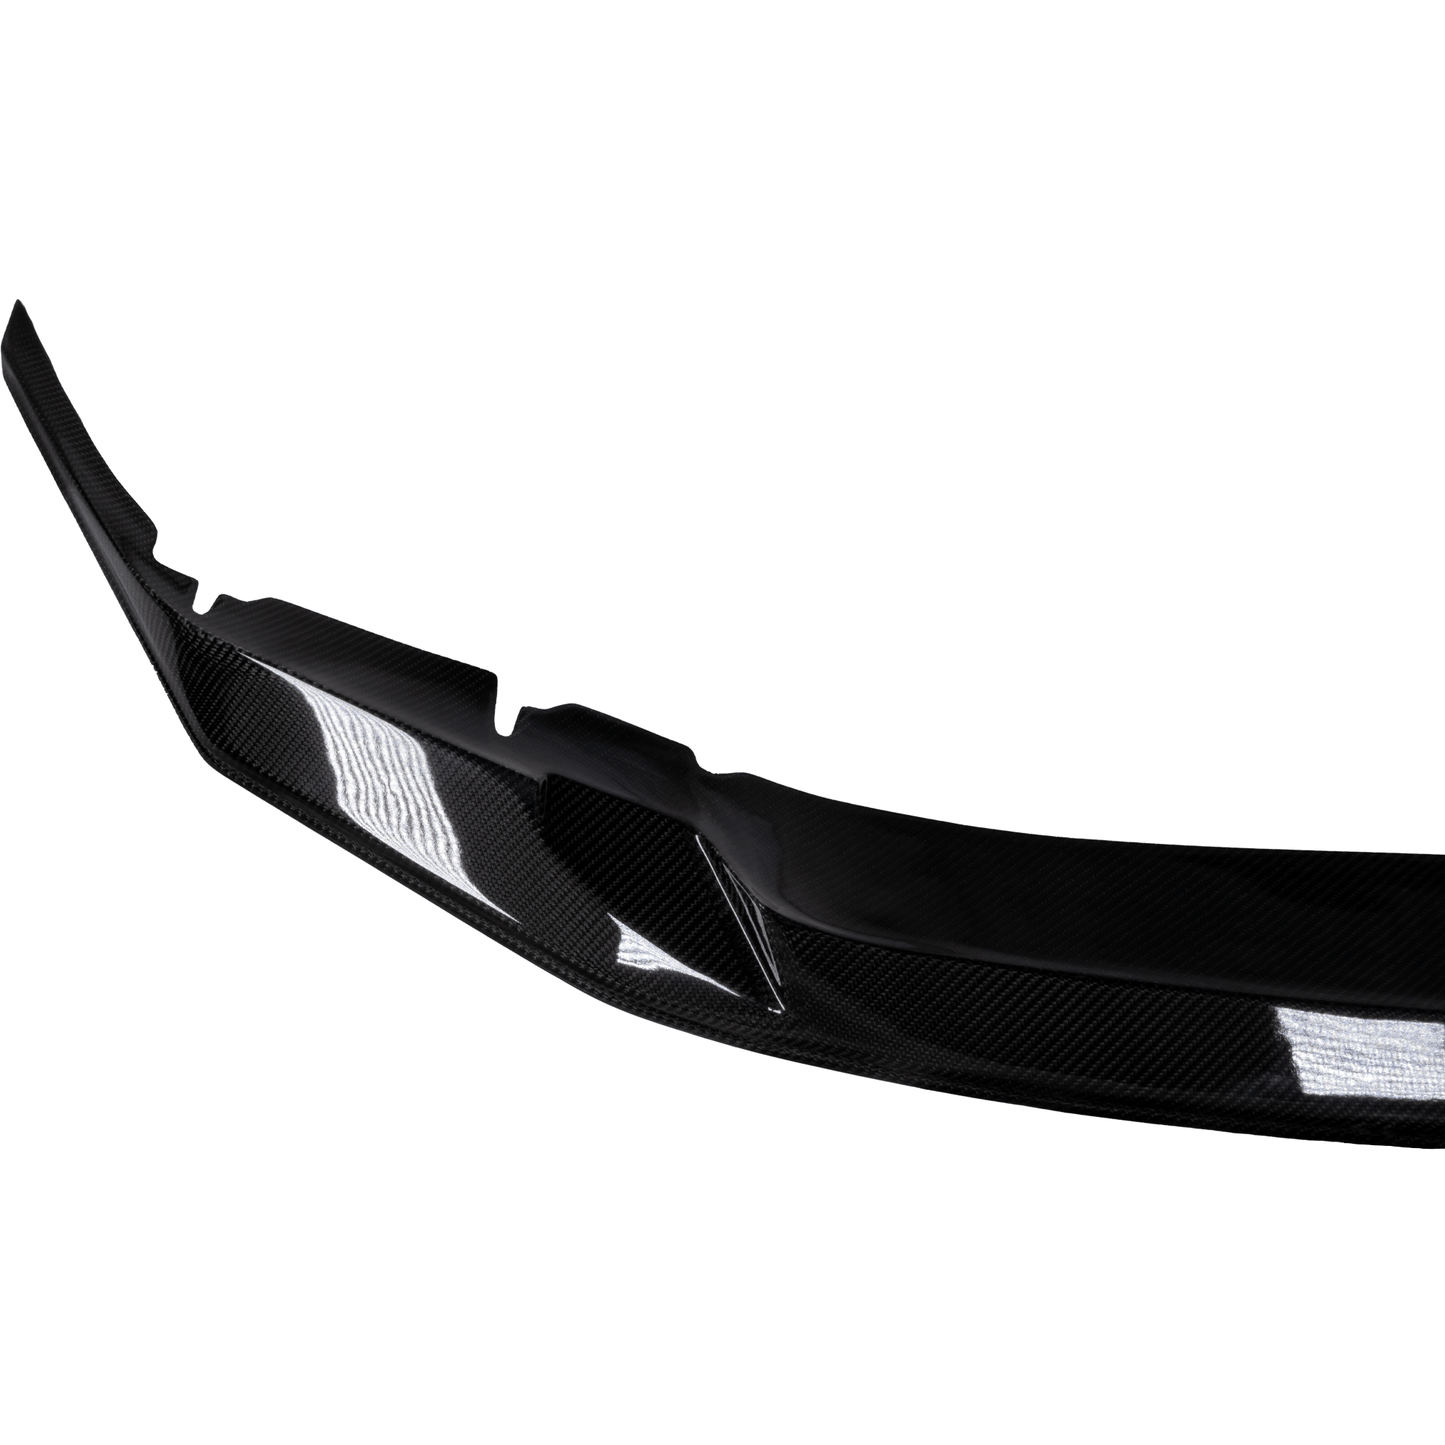 Suvneer GTS Designed F90 Carbon Fiber Front Lip